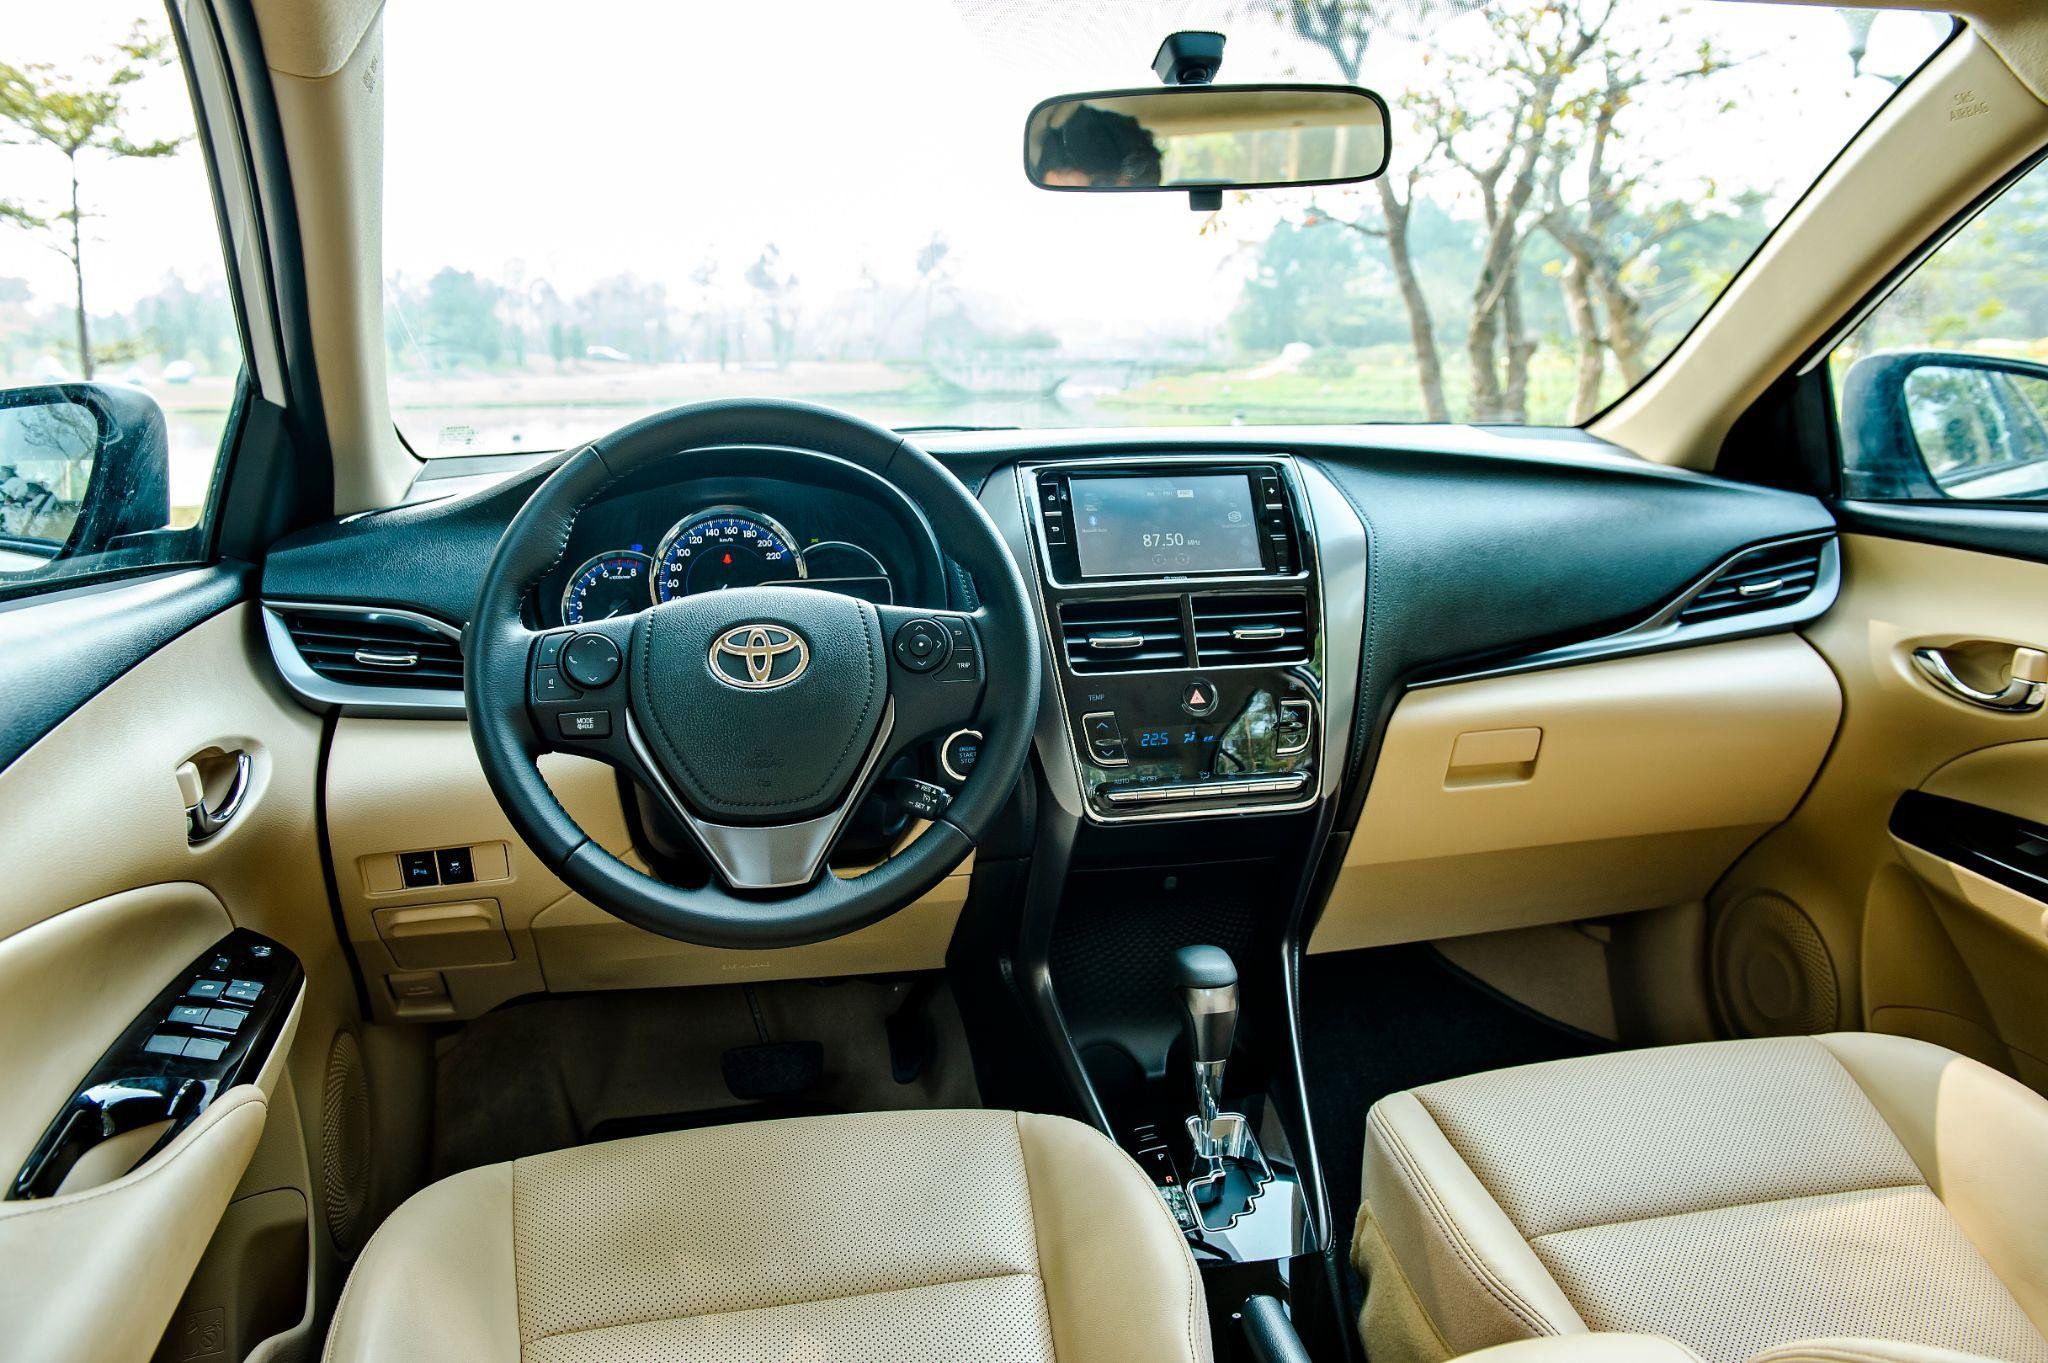 Hyundai Accent và Toyota Vios: Xe nào hợp với bạn? - 4